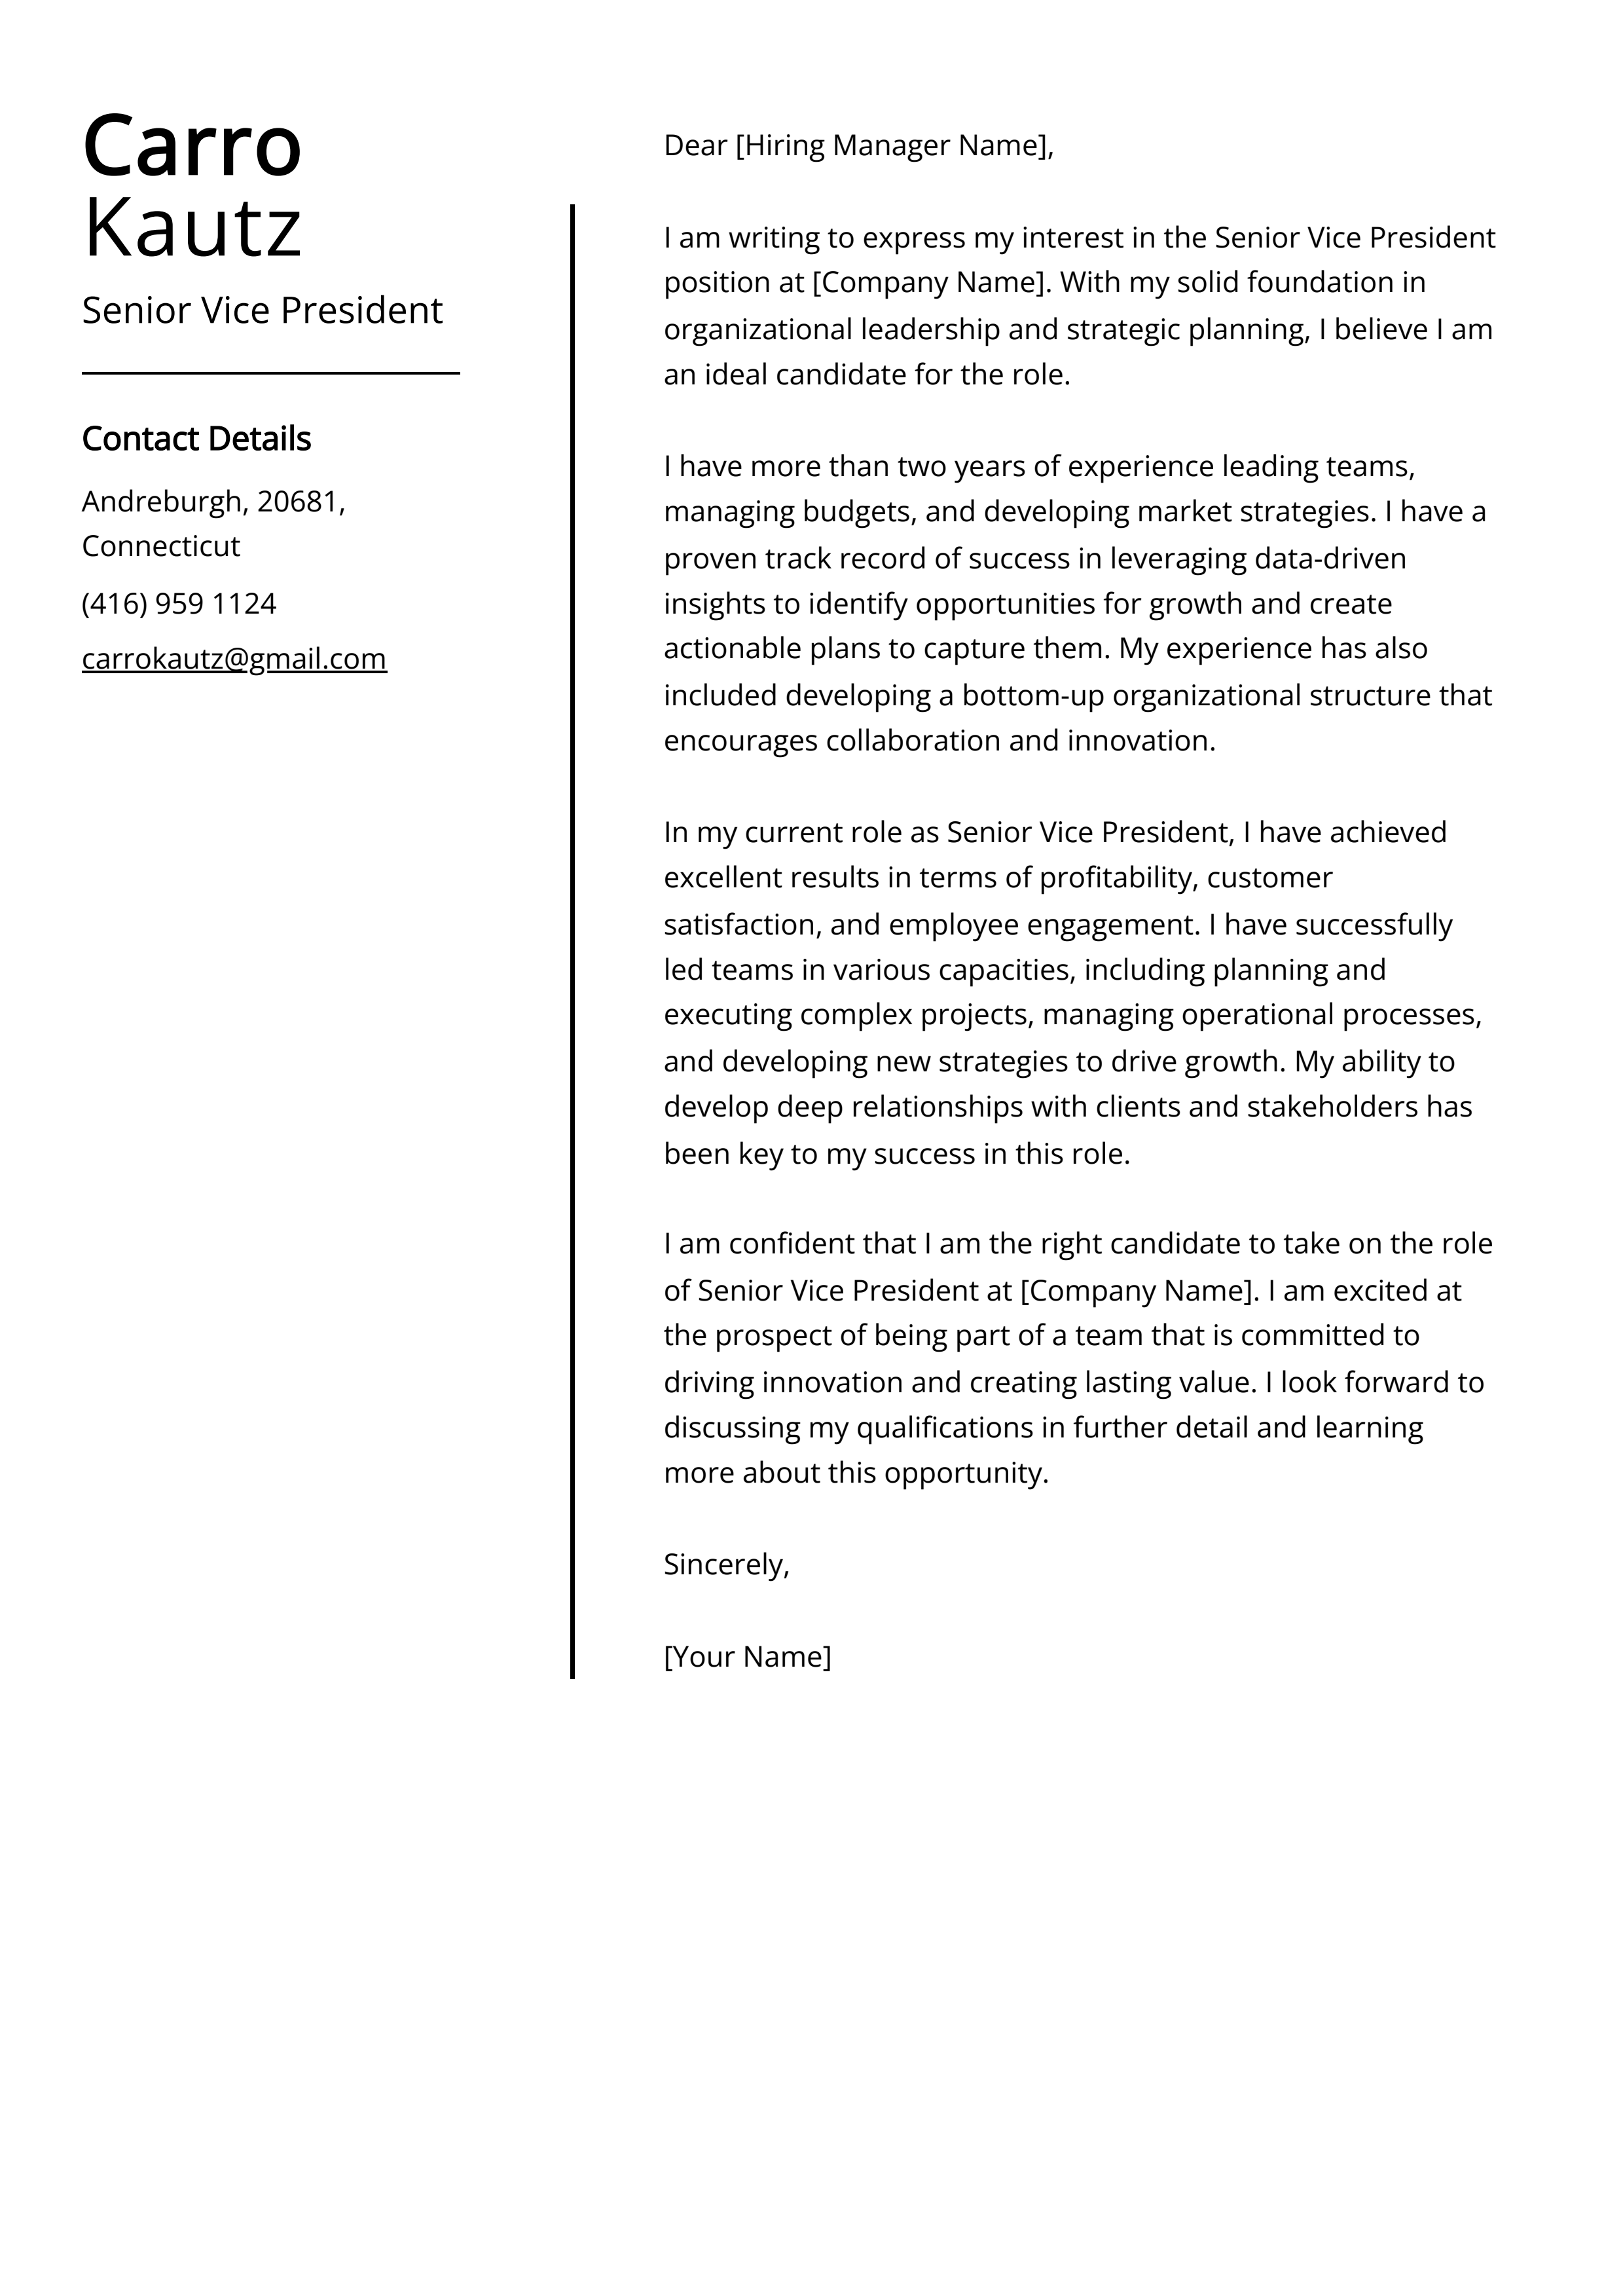 Senior Vice President Cover Letter Example